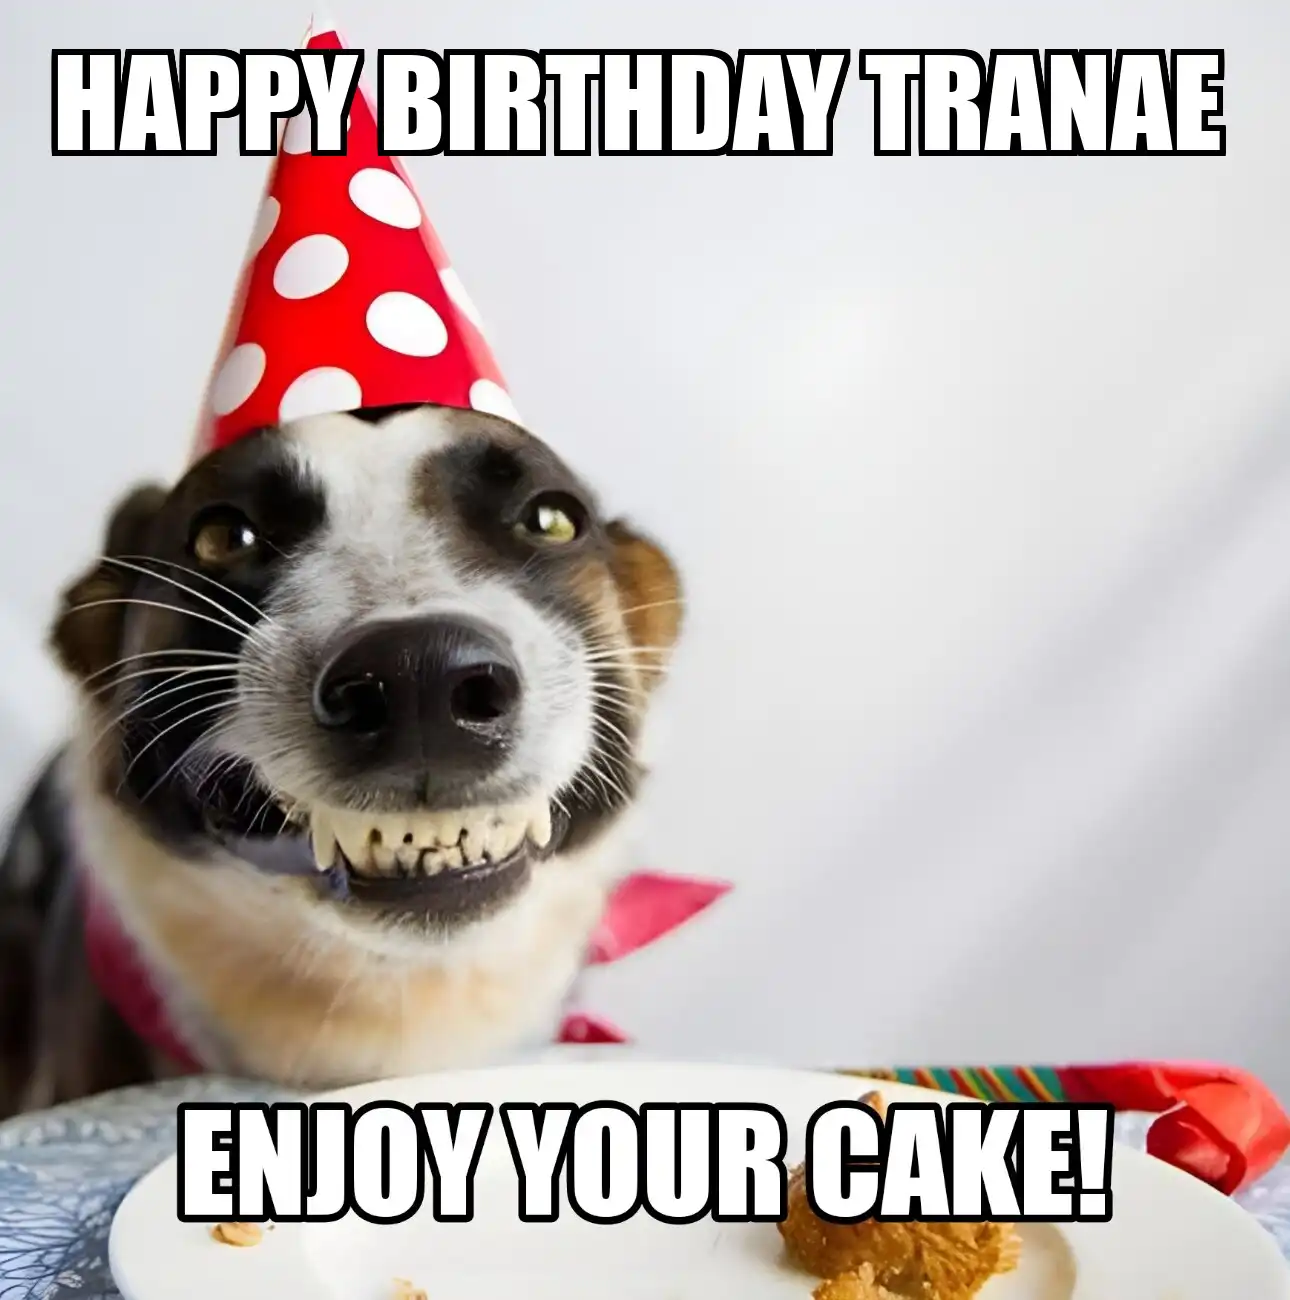 Happy Birthday Tranae Enjoy Your Cake Dog Meme